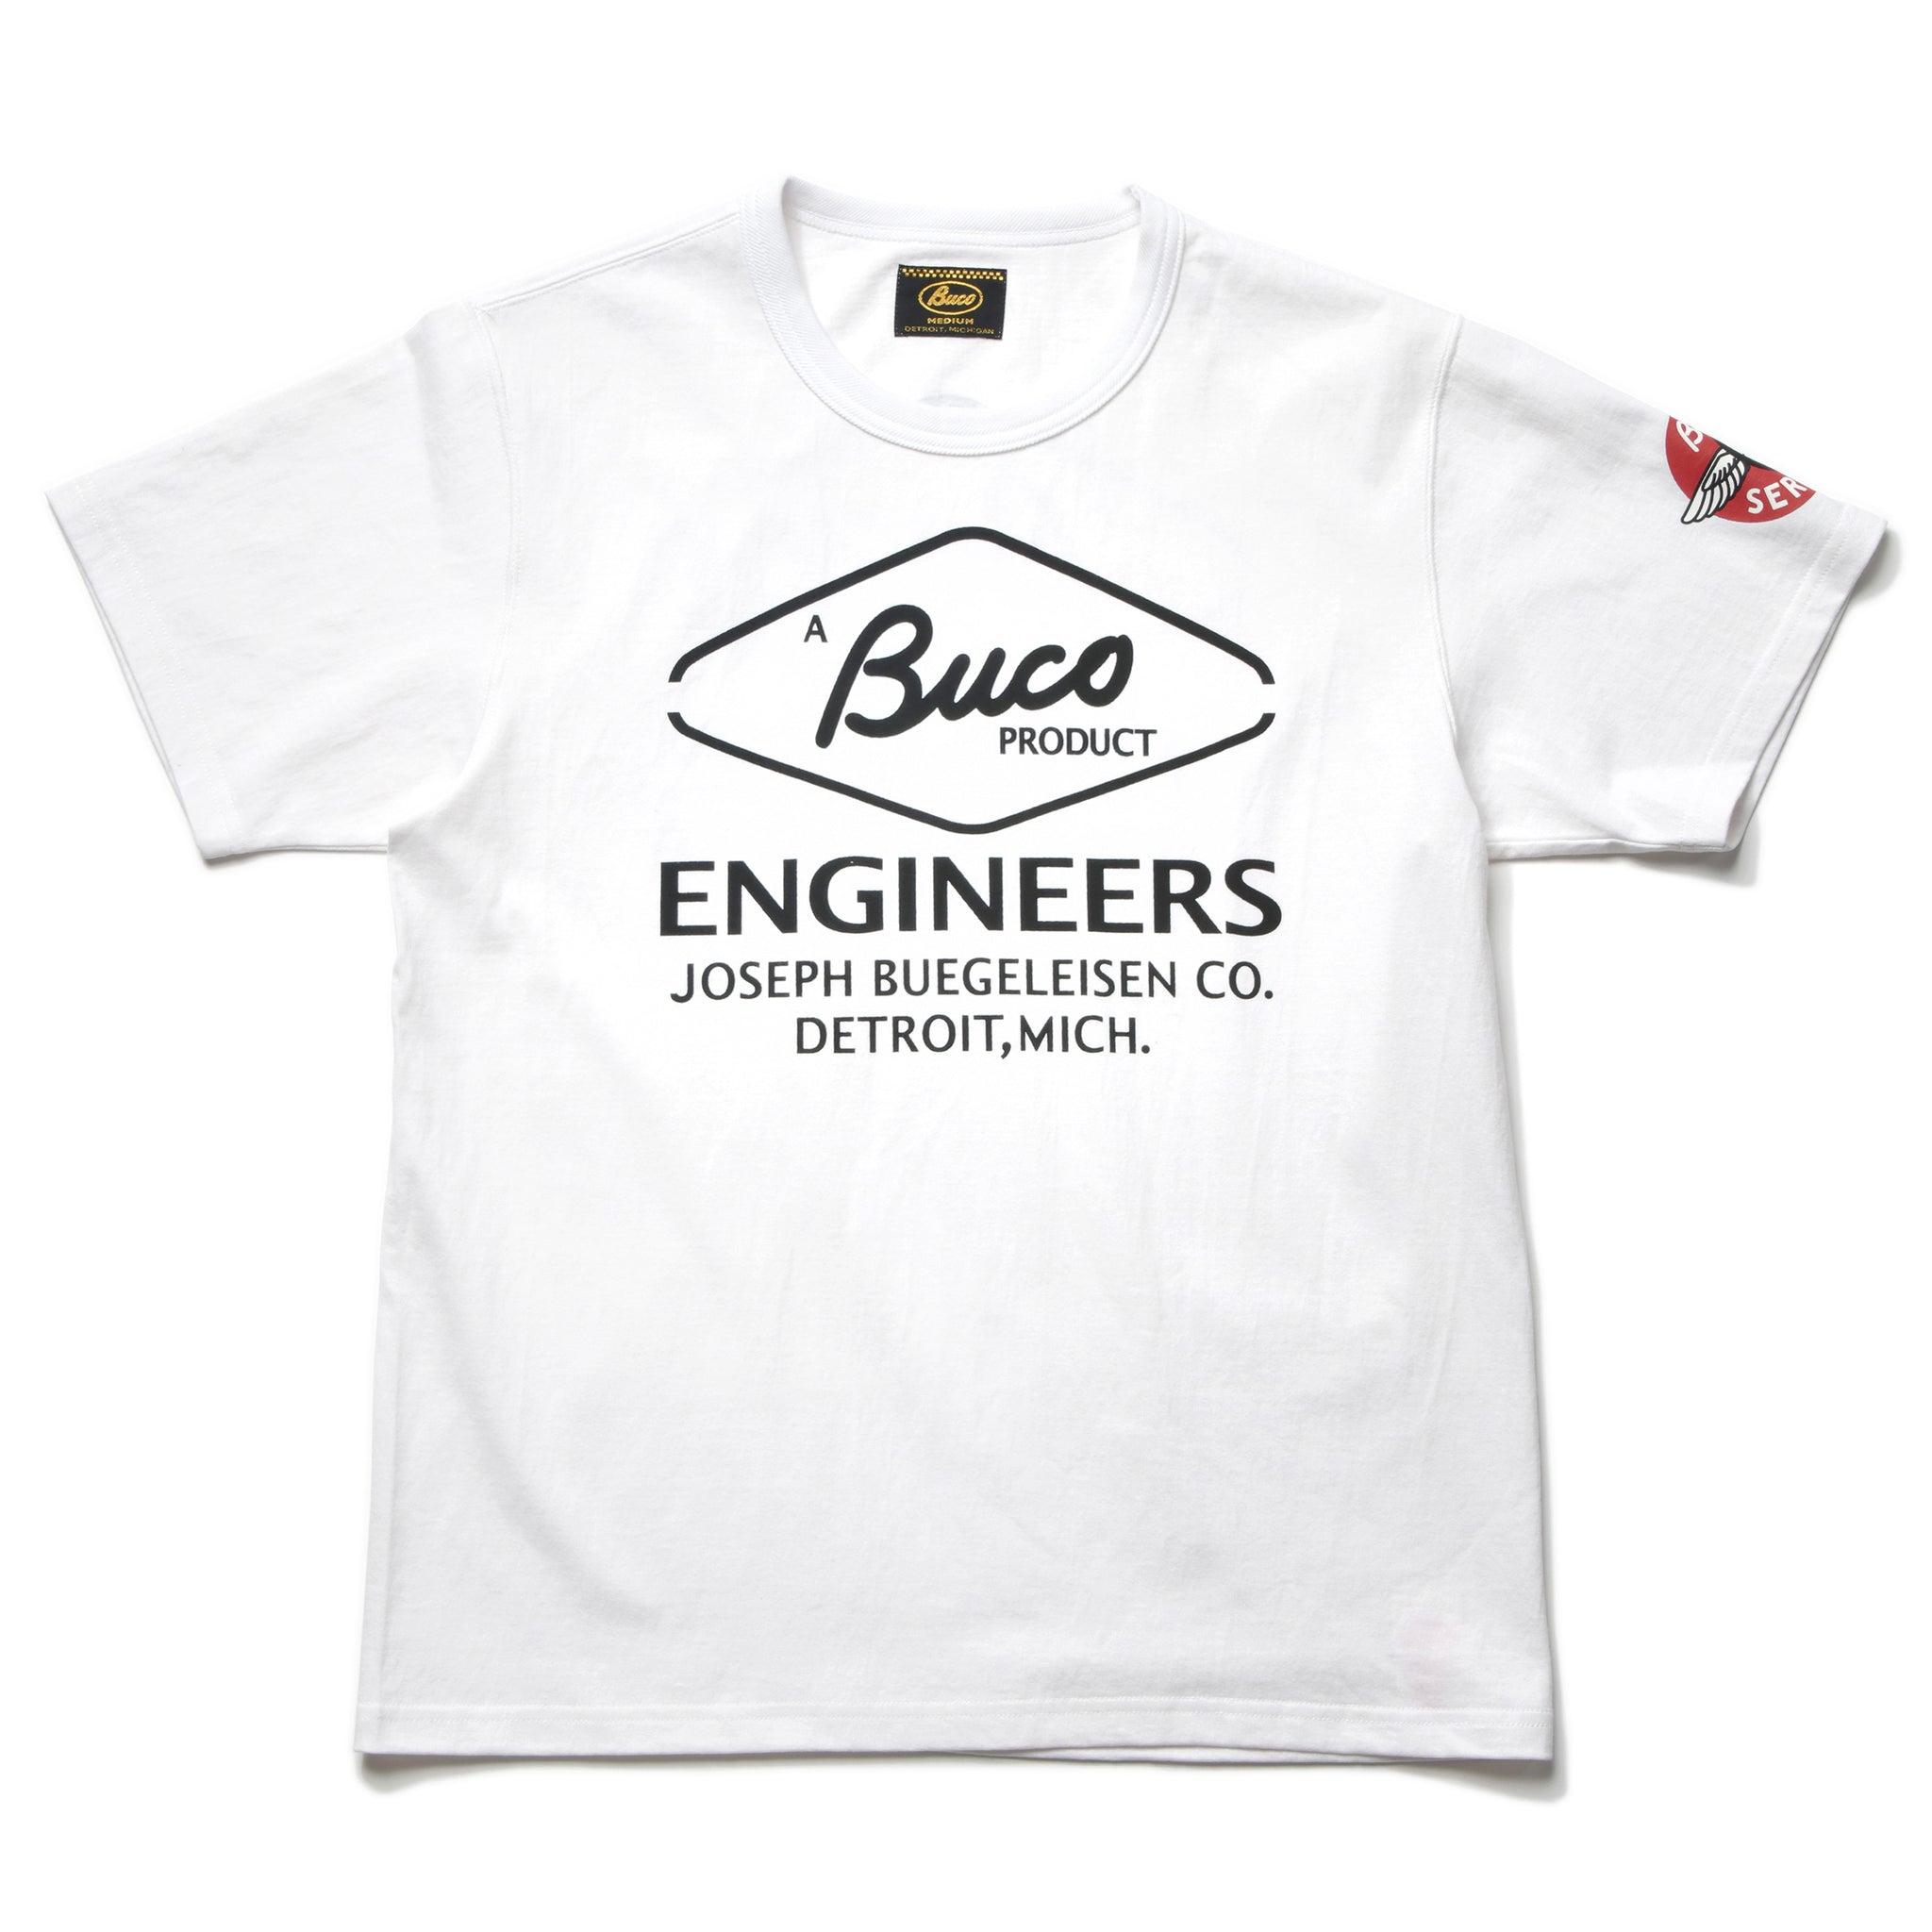 BUCO TEE / ENGINEER